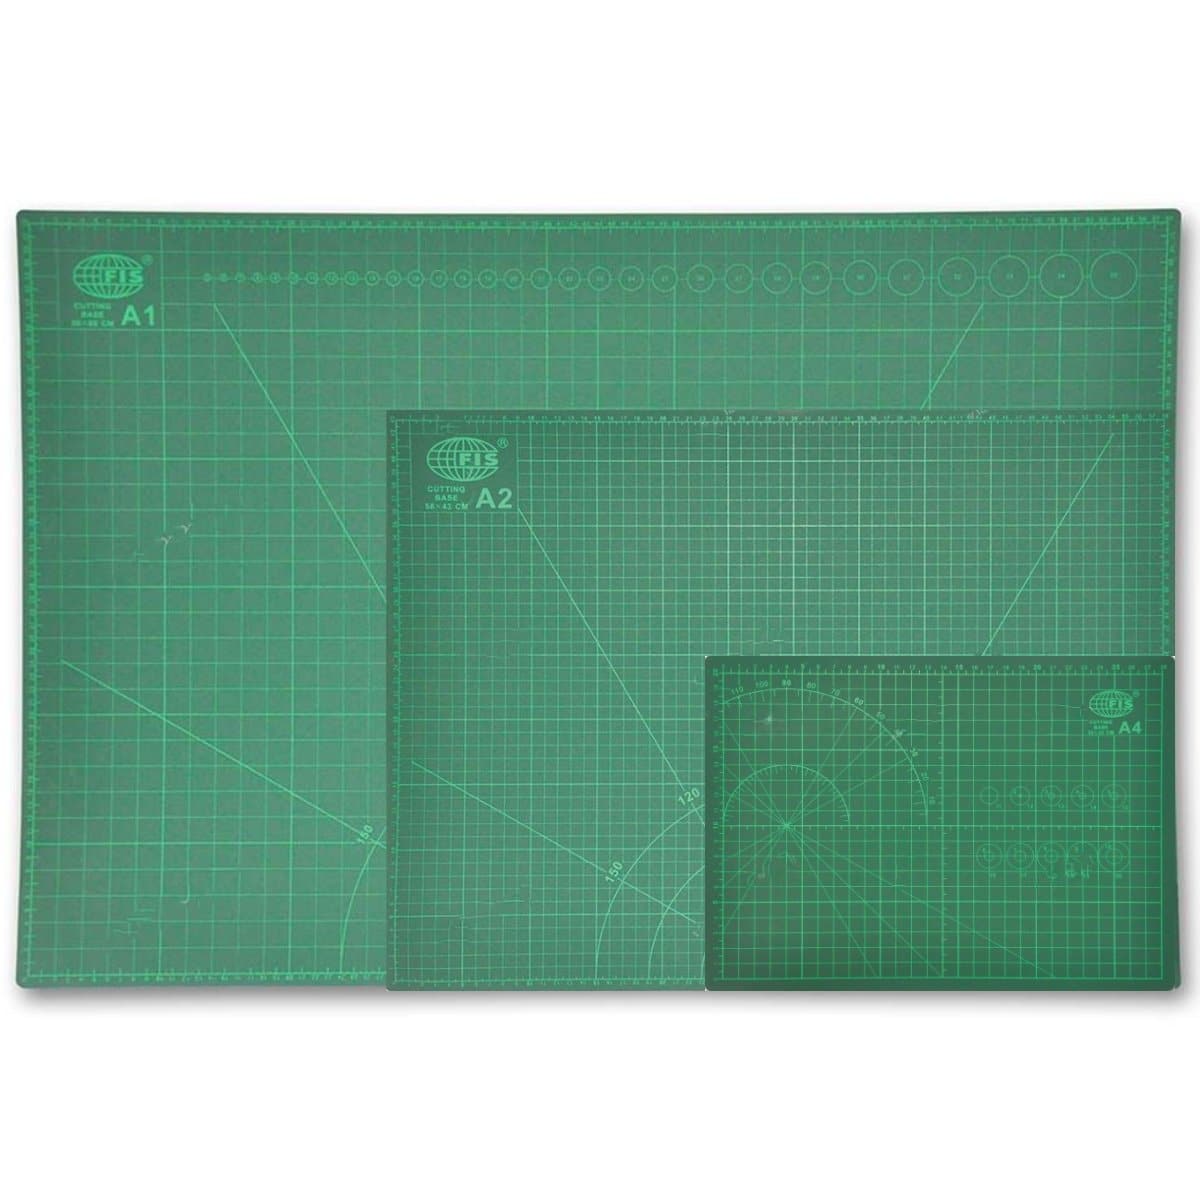 FIS Cutting Mat, Green - sizes A4, A3, A2, A1